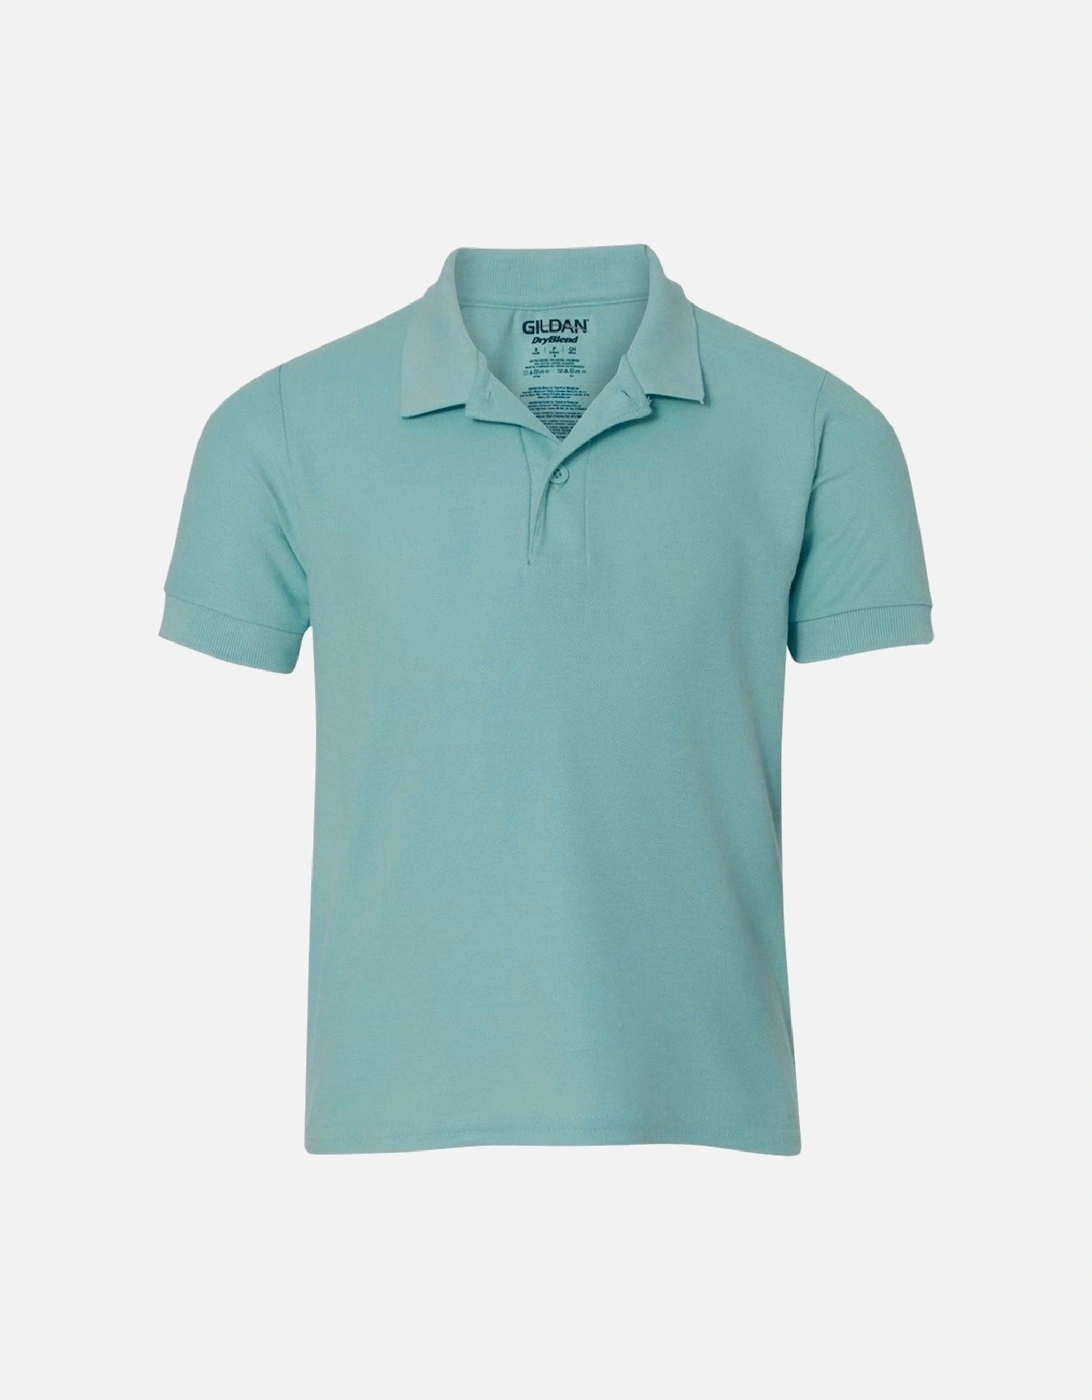 Mens Premium Cotton Sport Double Pique Polo Shirt, 4 of 3